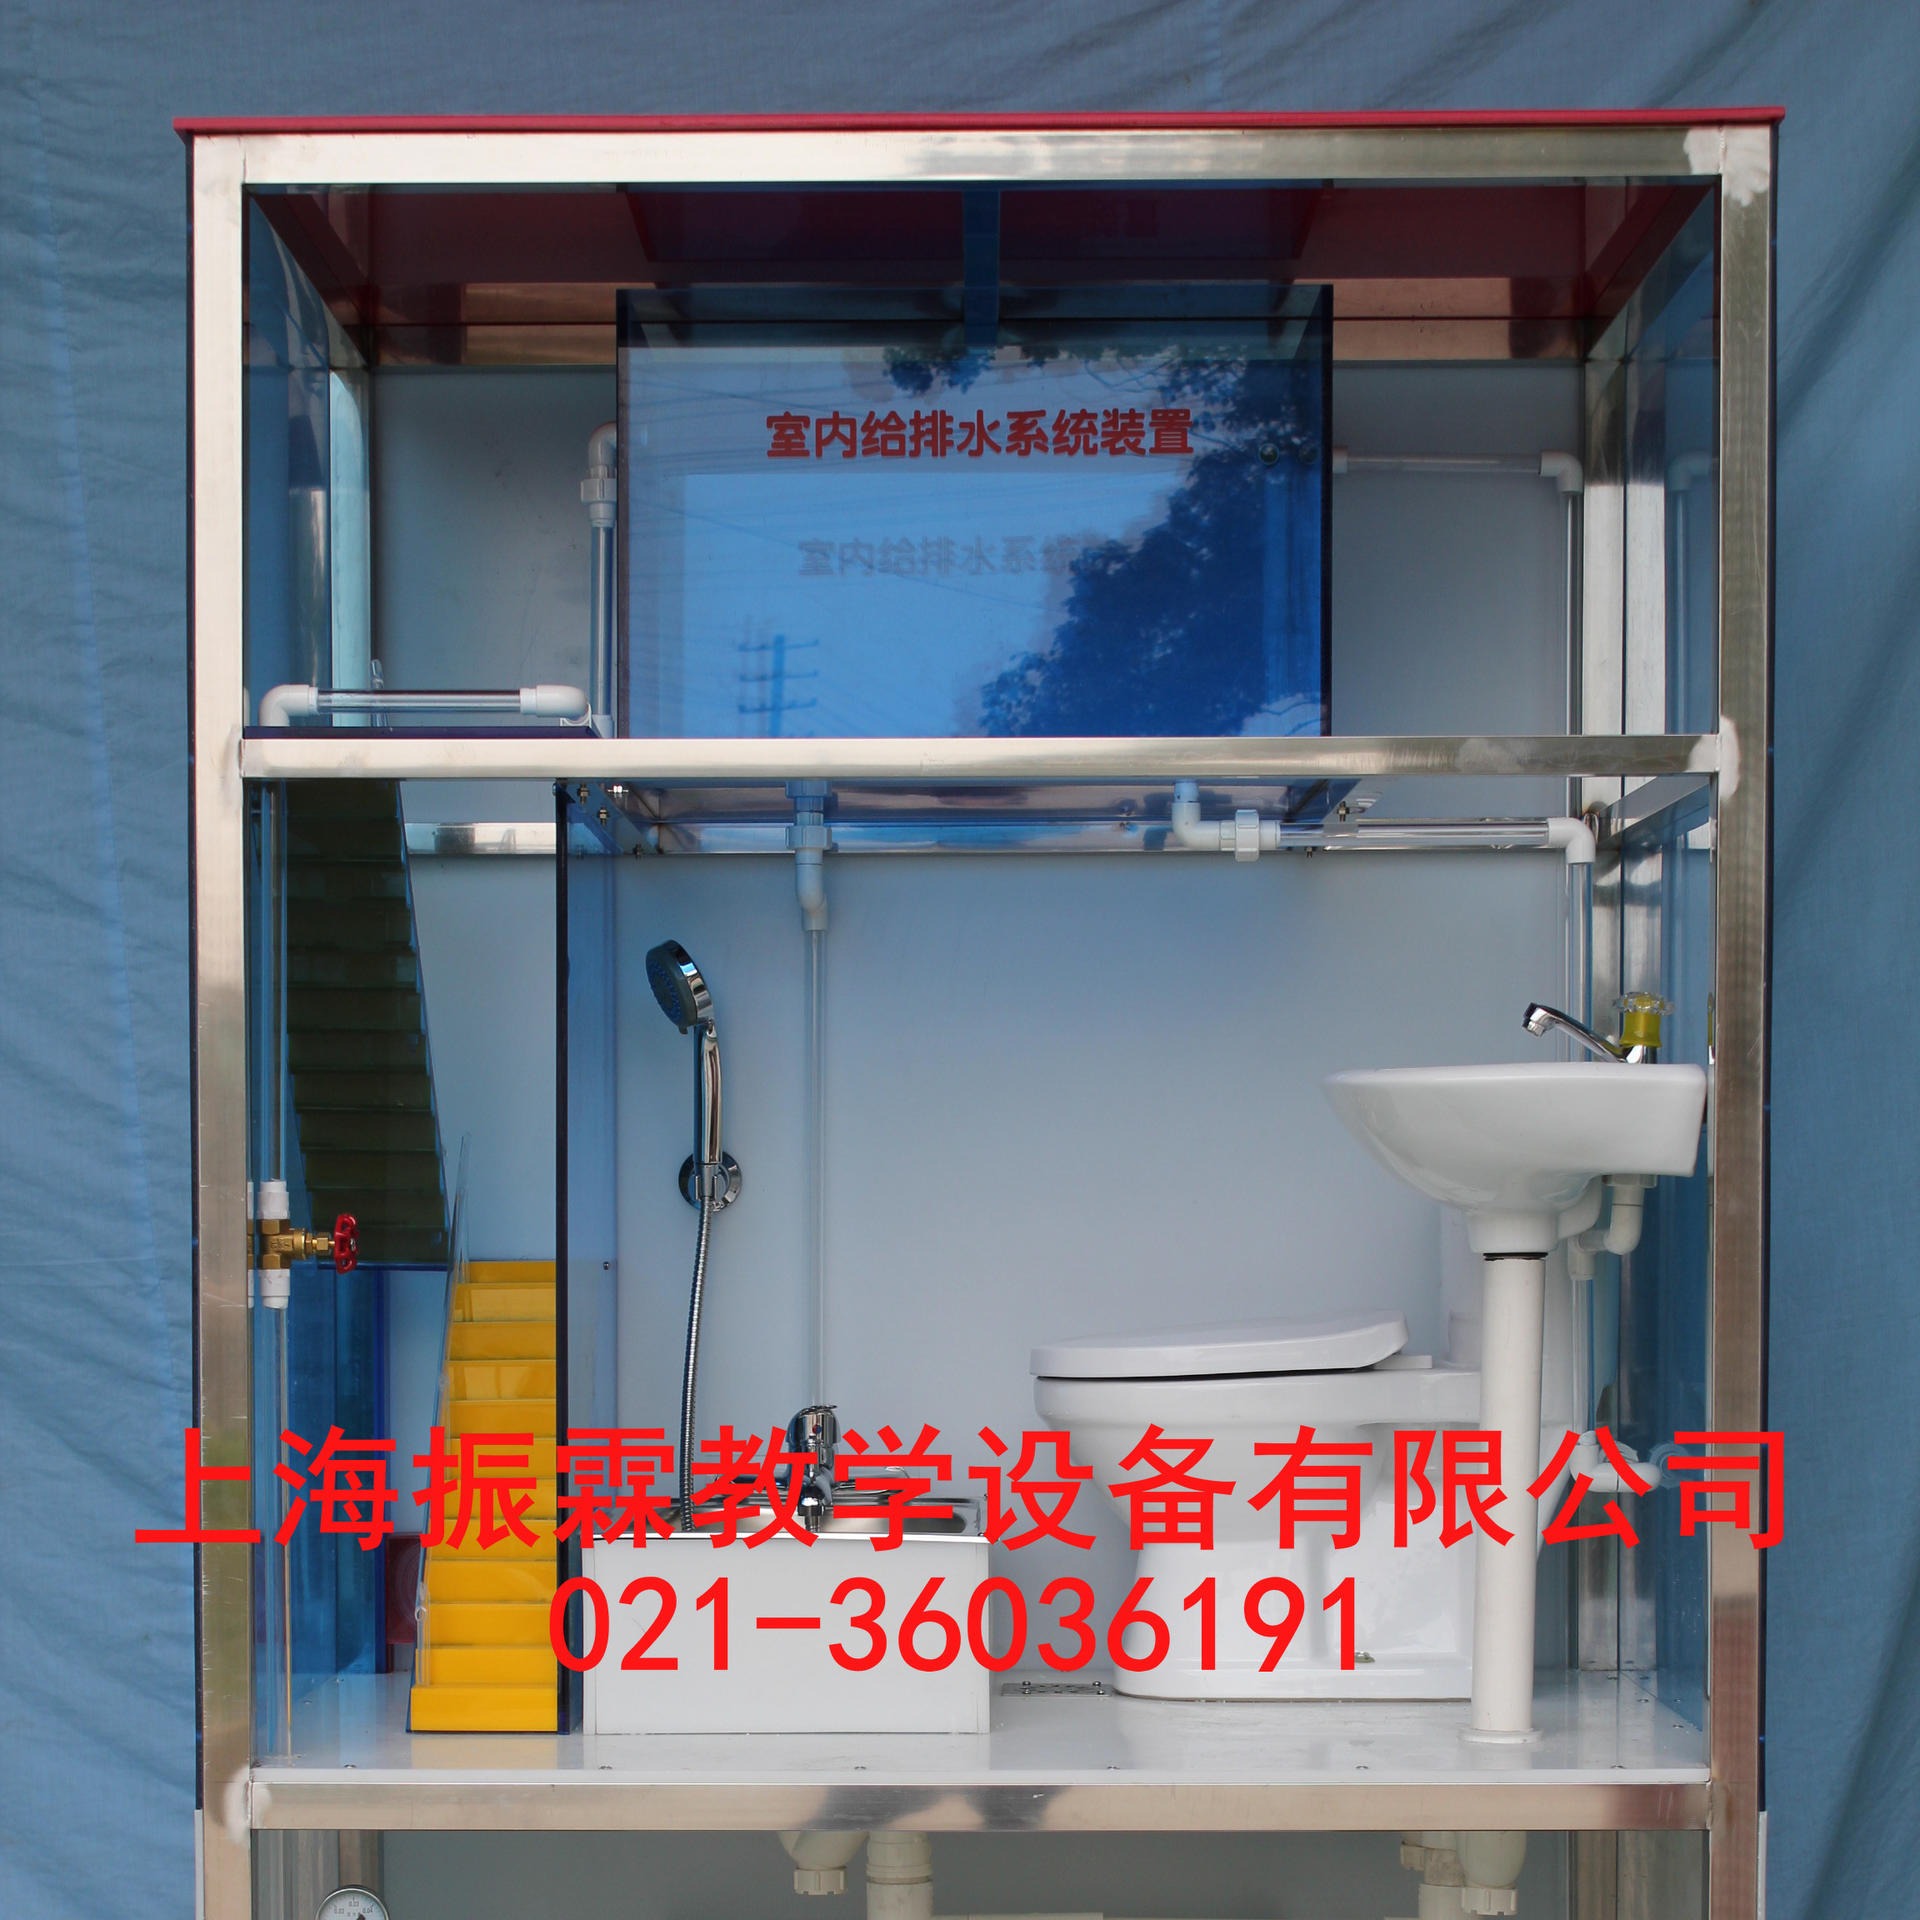 ZLHJ-V212型室内给排水系统 建筑给排水设备 室内给排水综合演示模型 室内排水实训设备  振霖 厂家制造